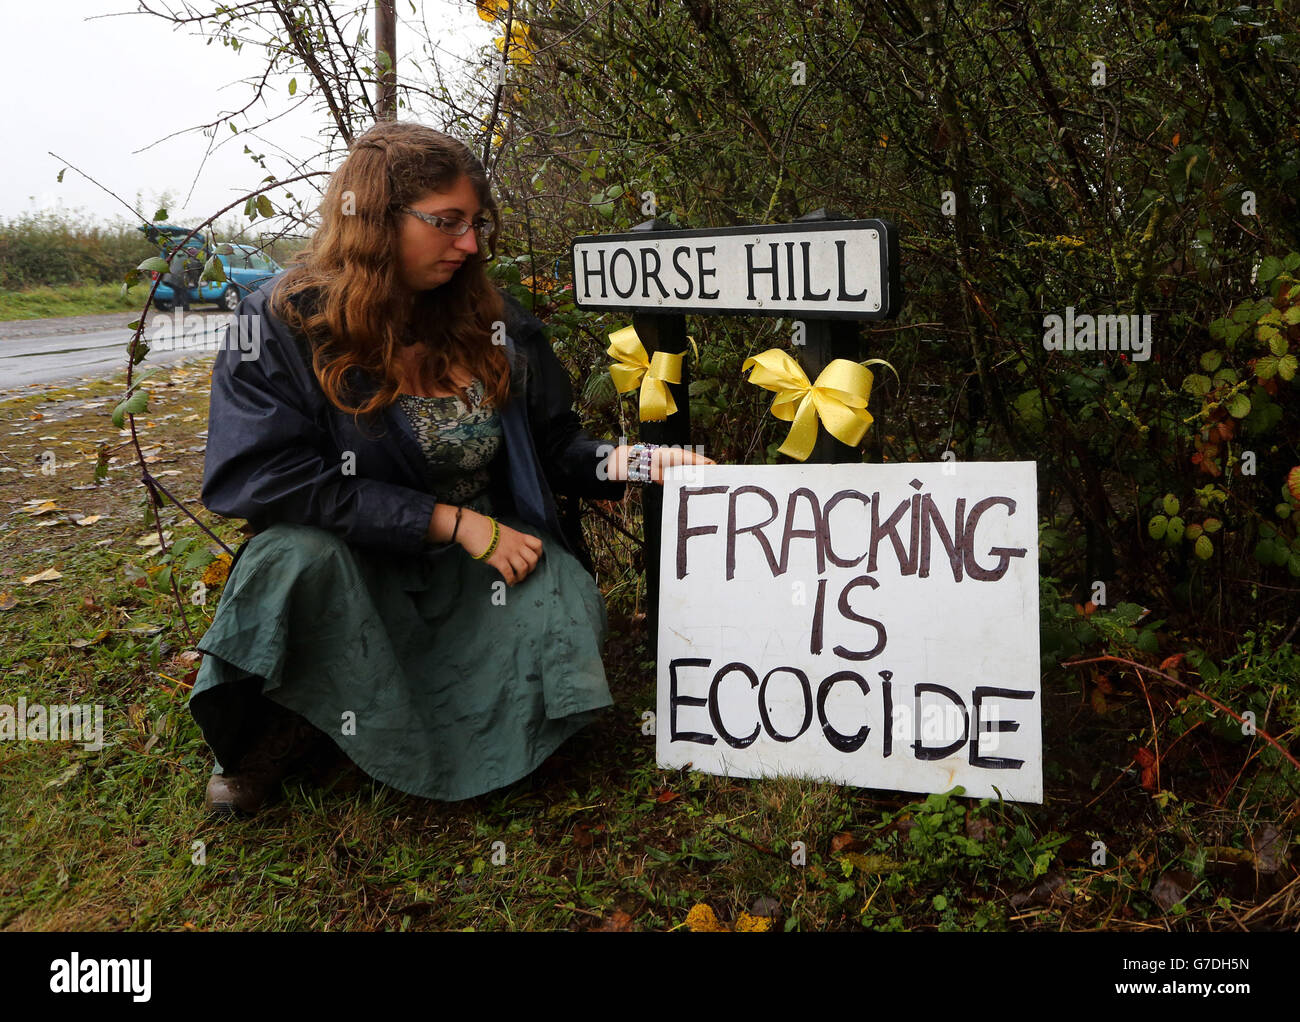 Die Anti-Fracking- und fossile Brennstoffe-Aktivistin Isabelle Bish vor einem Schutzcamp in der Nähe des Entwicklungsstandortes Horley in Surrey, nach einer öffentlichen Besprechung, um das Explorationsbohrprojekt zu diskutieren. Stockfoto